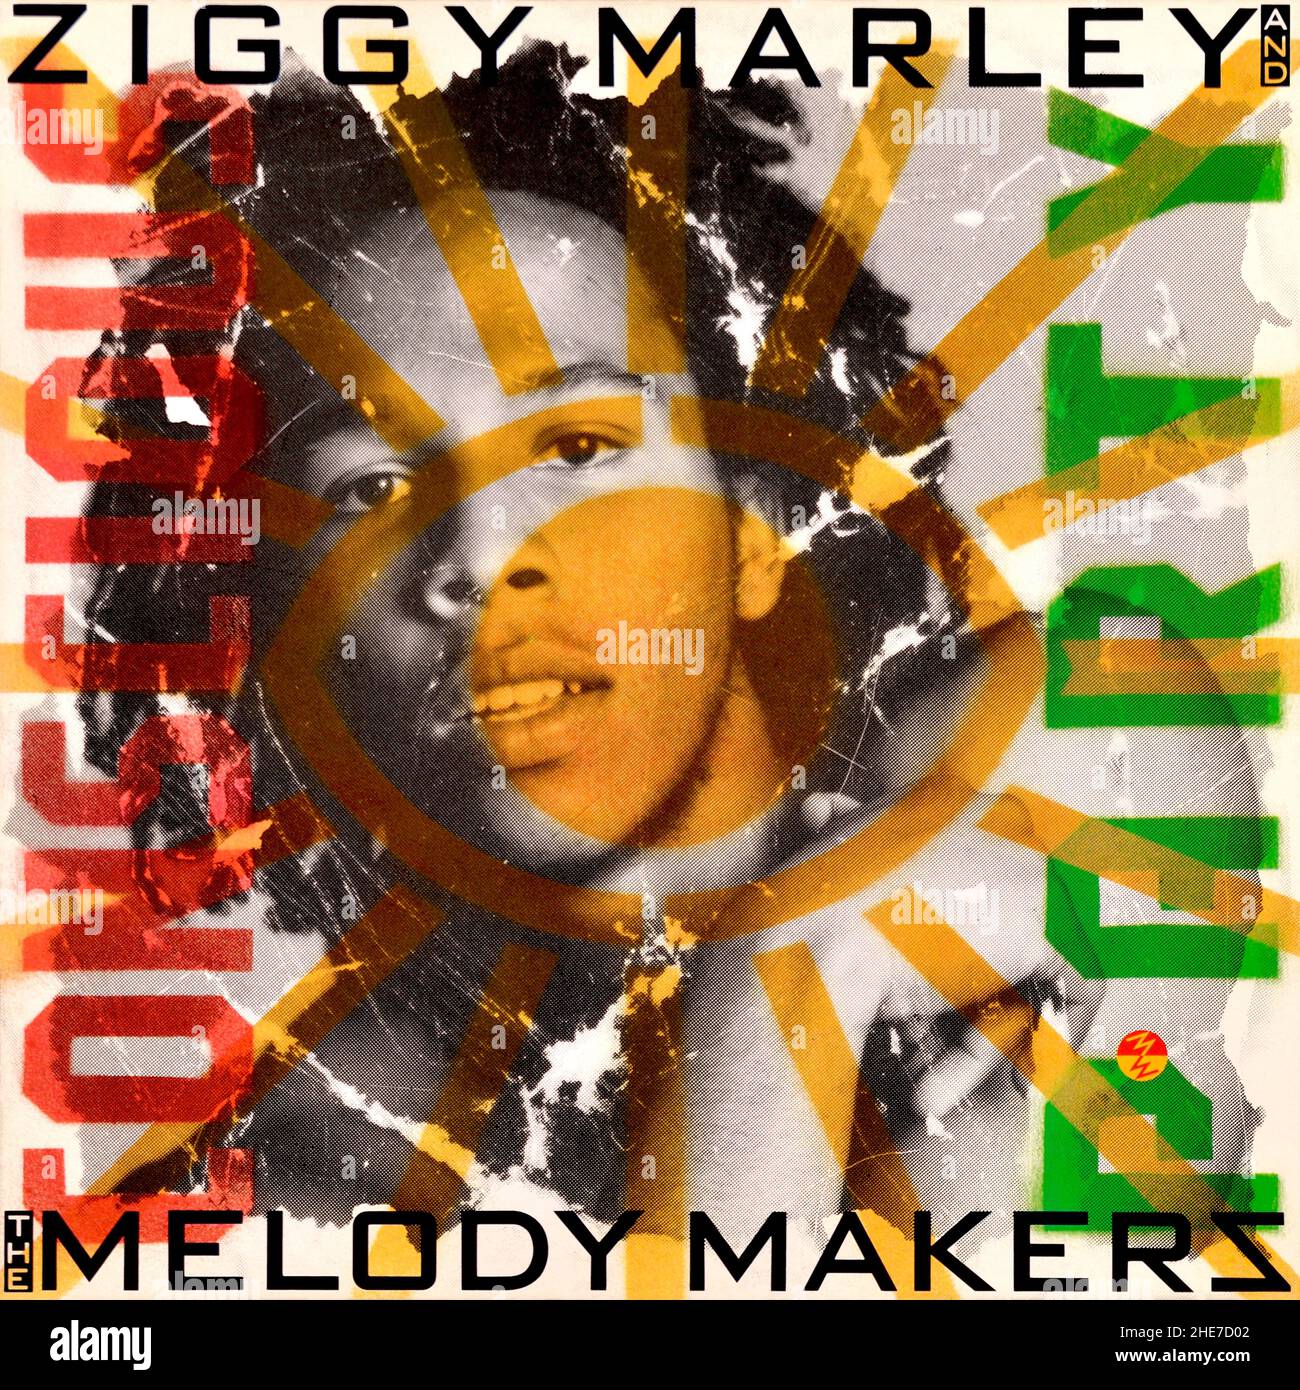 Ziggy Marley e The Melody Makers - copertina originale dell'album in vinile - Conscious Party - 1988 Foto Stock